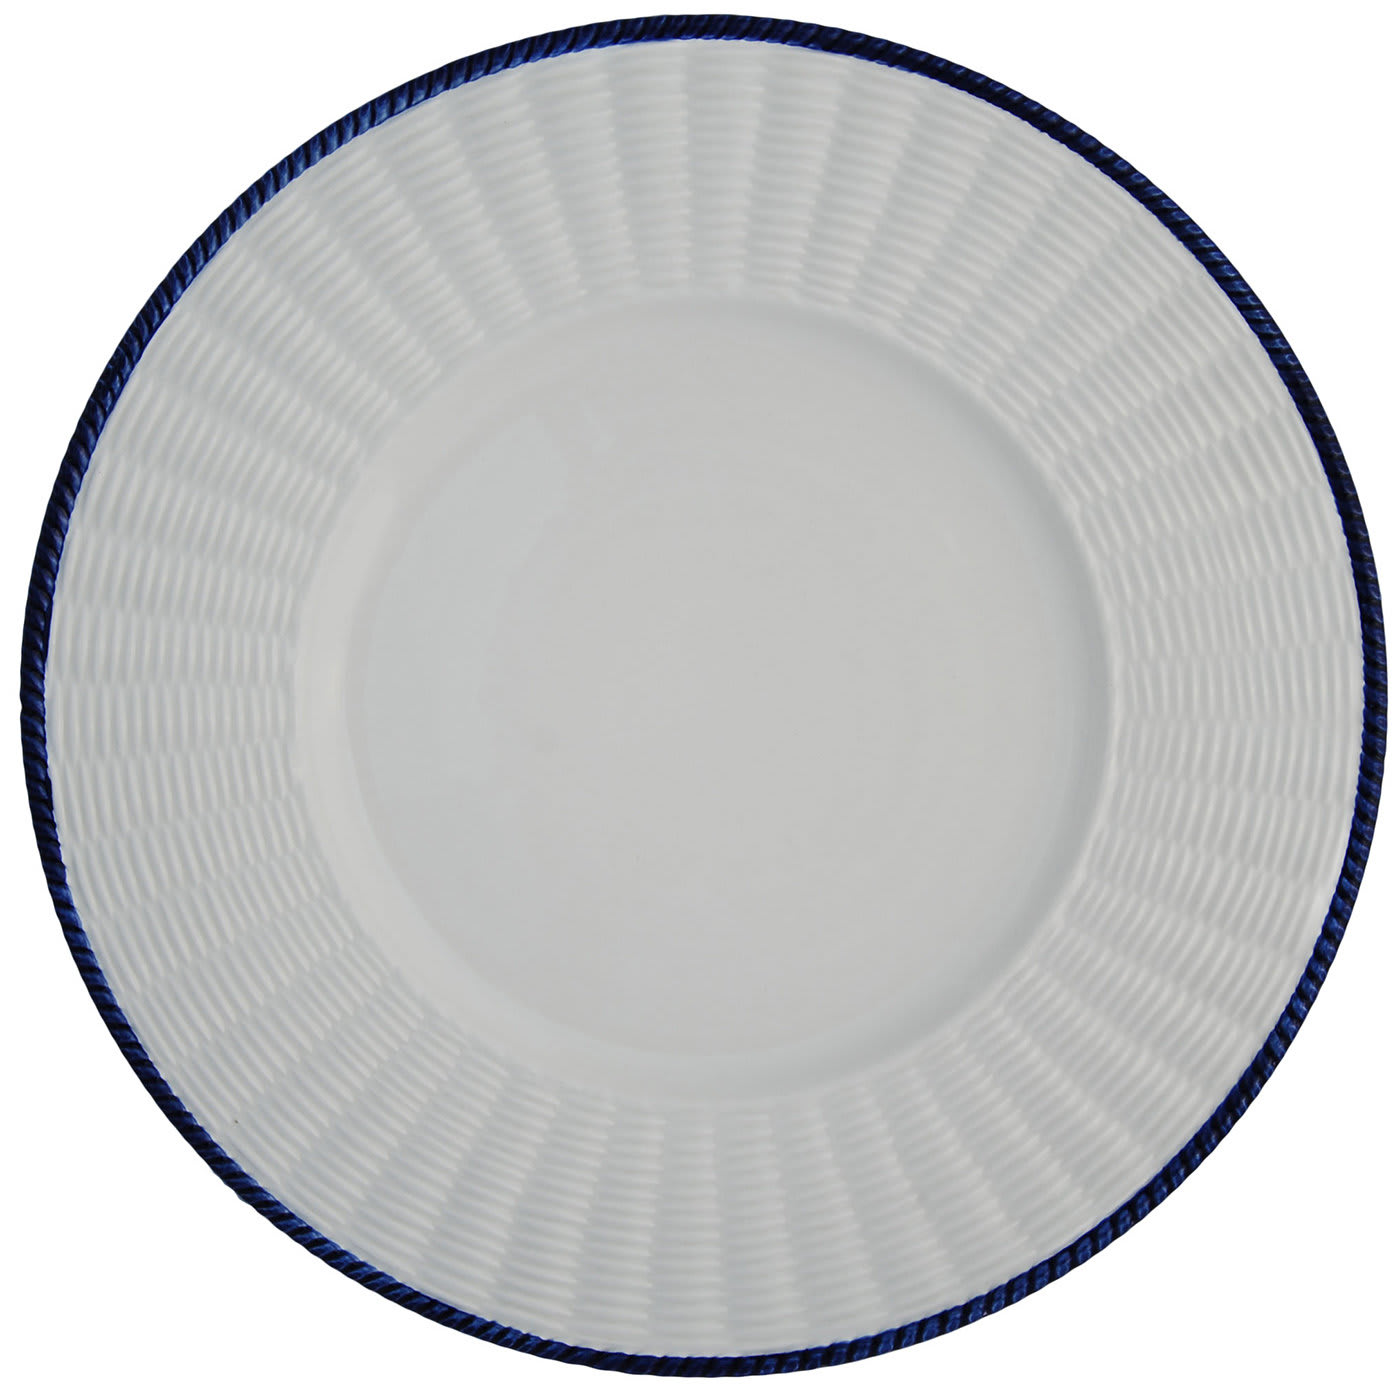 Este White Ceramic Plates Set for Two - Este Ceramiche